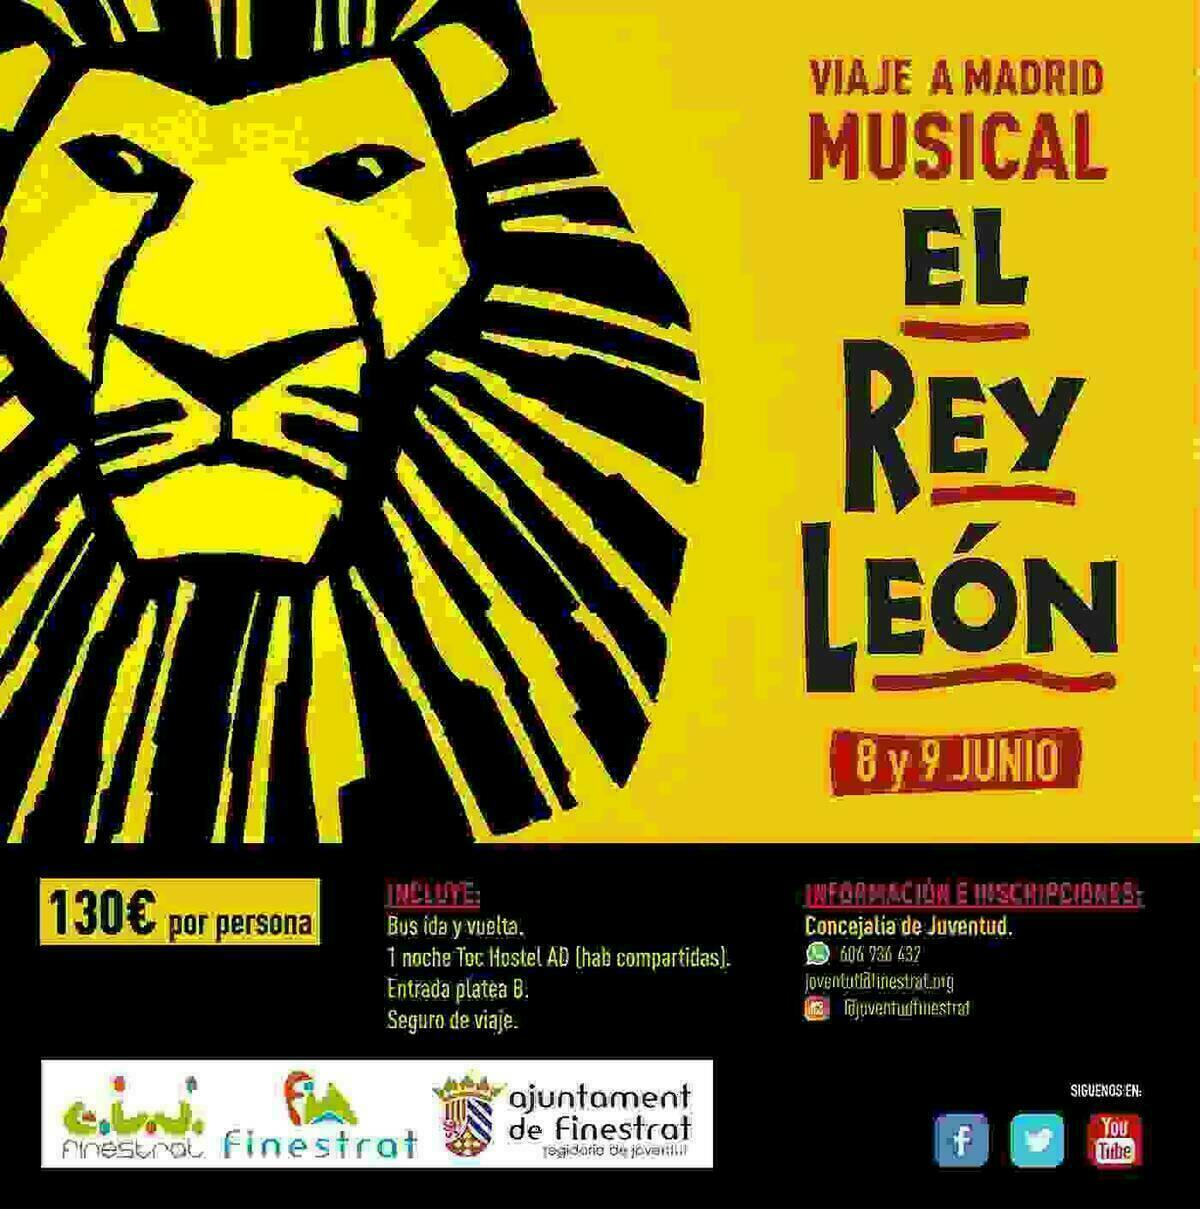 La Concejalía de Juventud de Finestrat lanza visita a Madrid para ver el musical de “El Rey León”